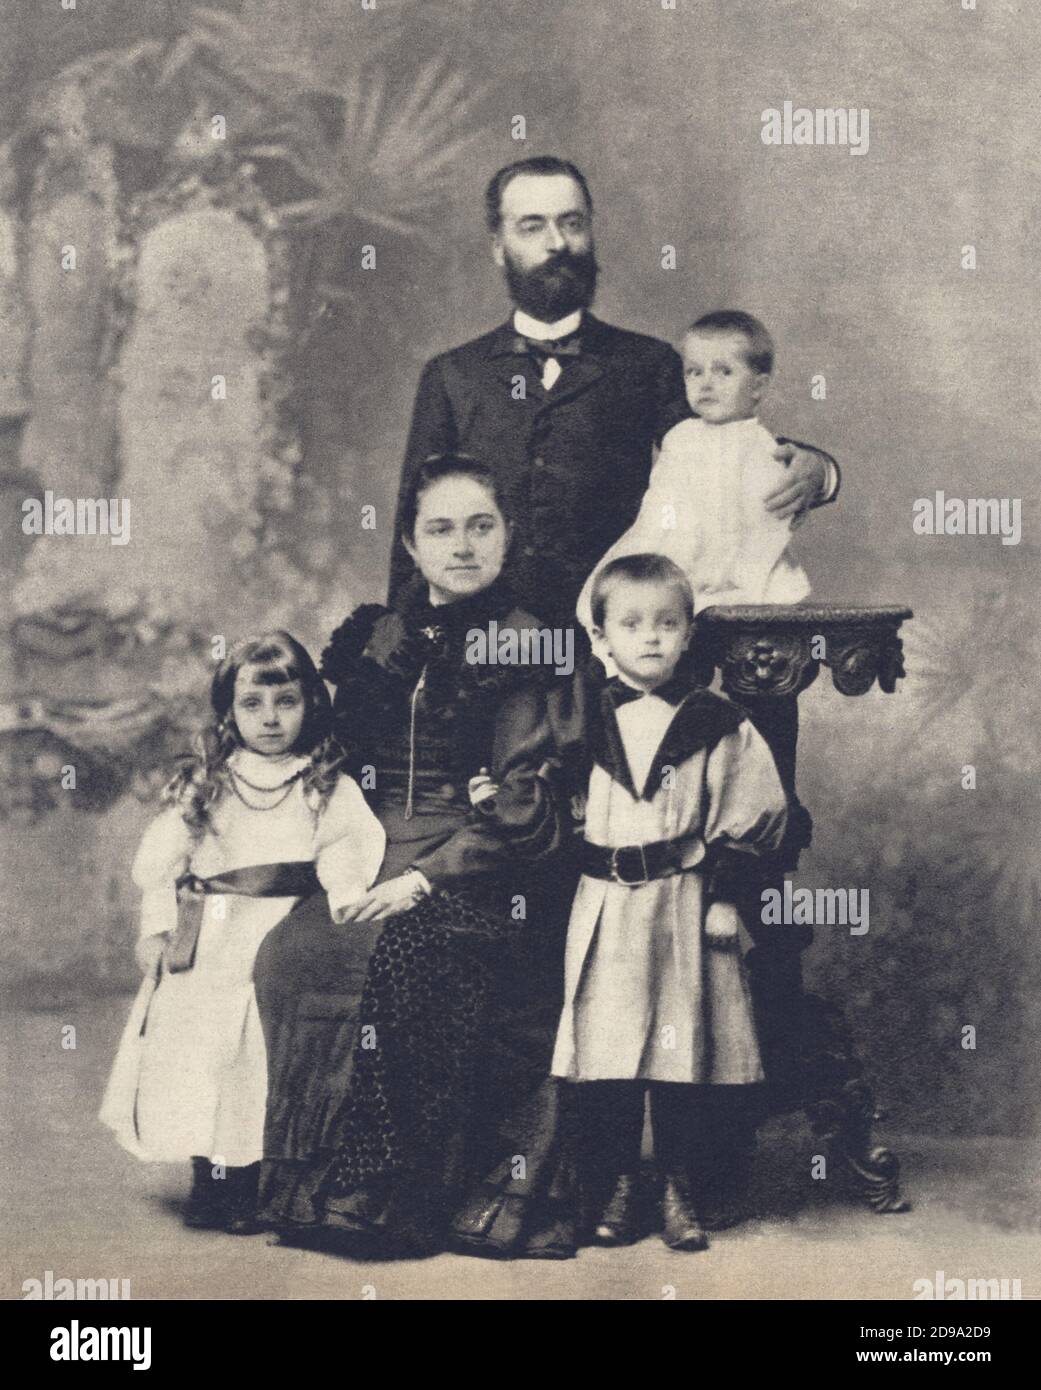 1895 ca, Genova , ITALIEN : der kommunistische italienische Politiker PALMIRO TOGLIATTI ( Genova 1893 - 1964 ) in die Hände seines Vaters ANTONIO TOGLIATTI auf einem Familienfoto mit Mutter TERESA VIALE und den Brüdern CRISTINA und EUGENIO - PCI - P.C.I. - PARTITO COMUNISTA ITALIANO - COMUNISMO - LIBERAZIONE - RESISTENZA - Portrait - ritratto - POLITICA - POLITICO - ITALIA - POLITIC - ITALIEN - lens - occhiali da vista - tie - cravatta - Kragen - colletto - RESISTENZA - family - famiglia - padre - madre - fratelli - Kinder - Kind - bambino - Bambini © Archivio GBB / Stockfoto